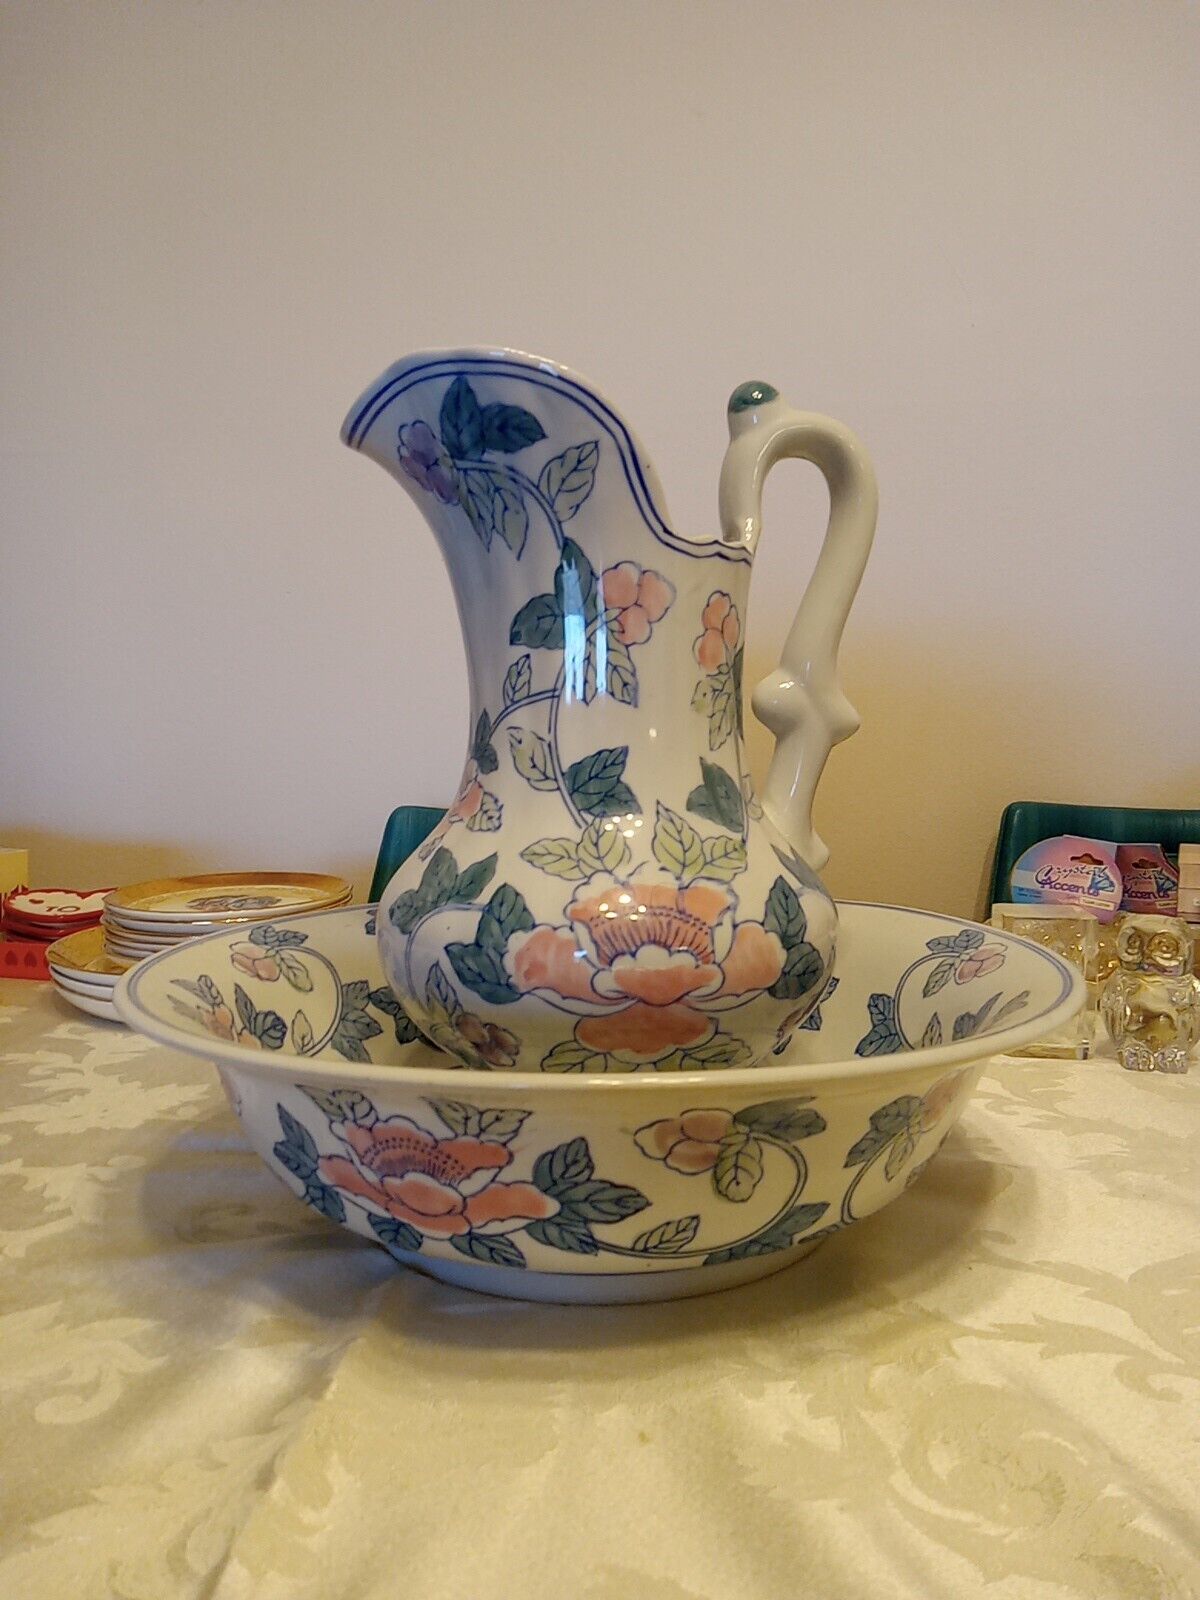 Vintage Antique Porcelain Pitcher and Bowl Wash Basin set, blue, 